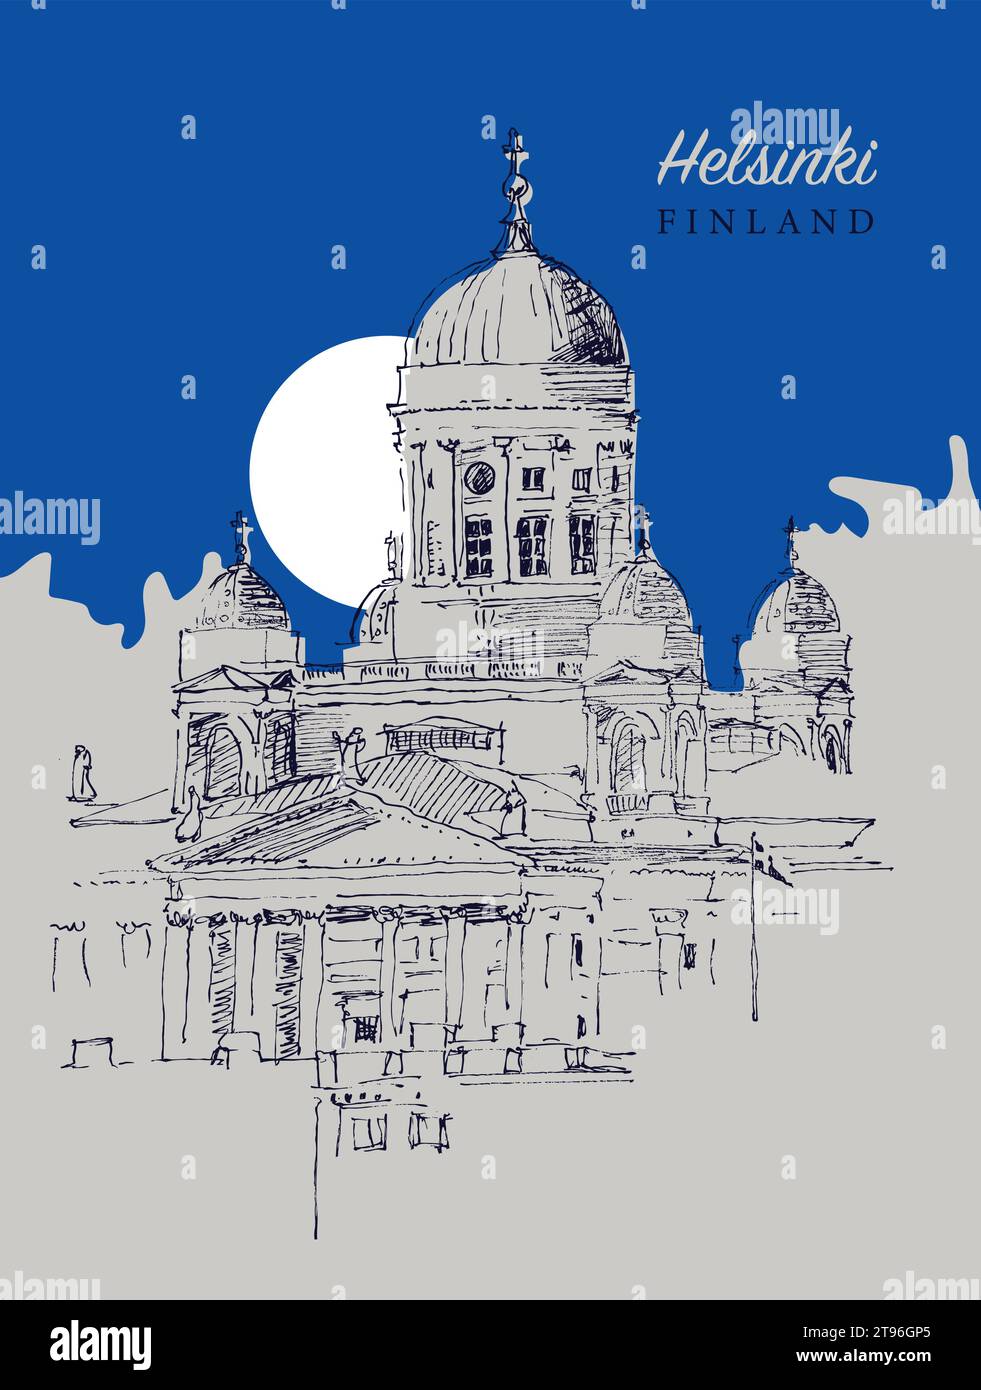 Handgezeichnete Vektor-Skizzenillustration der Helsinki Kathedrale in Helsinki, der Hauptstadt Finnlands. Stock Vektor